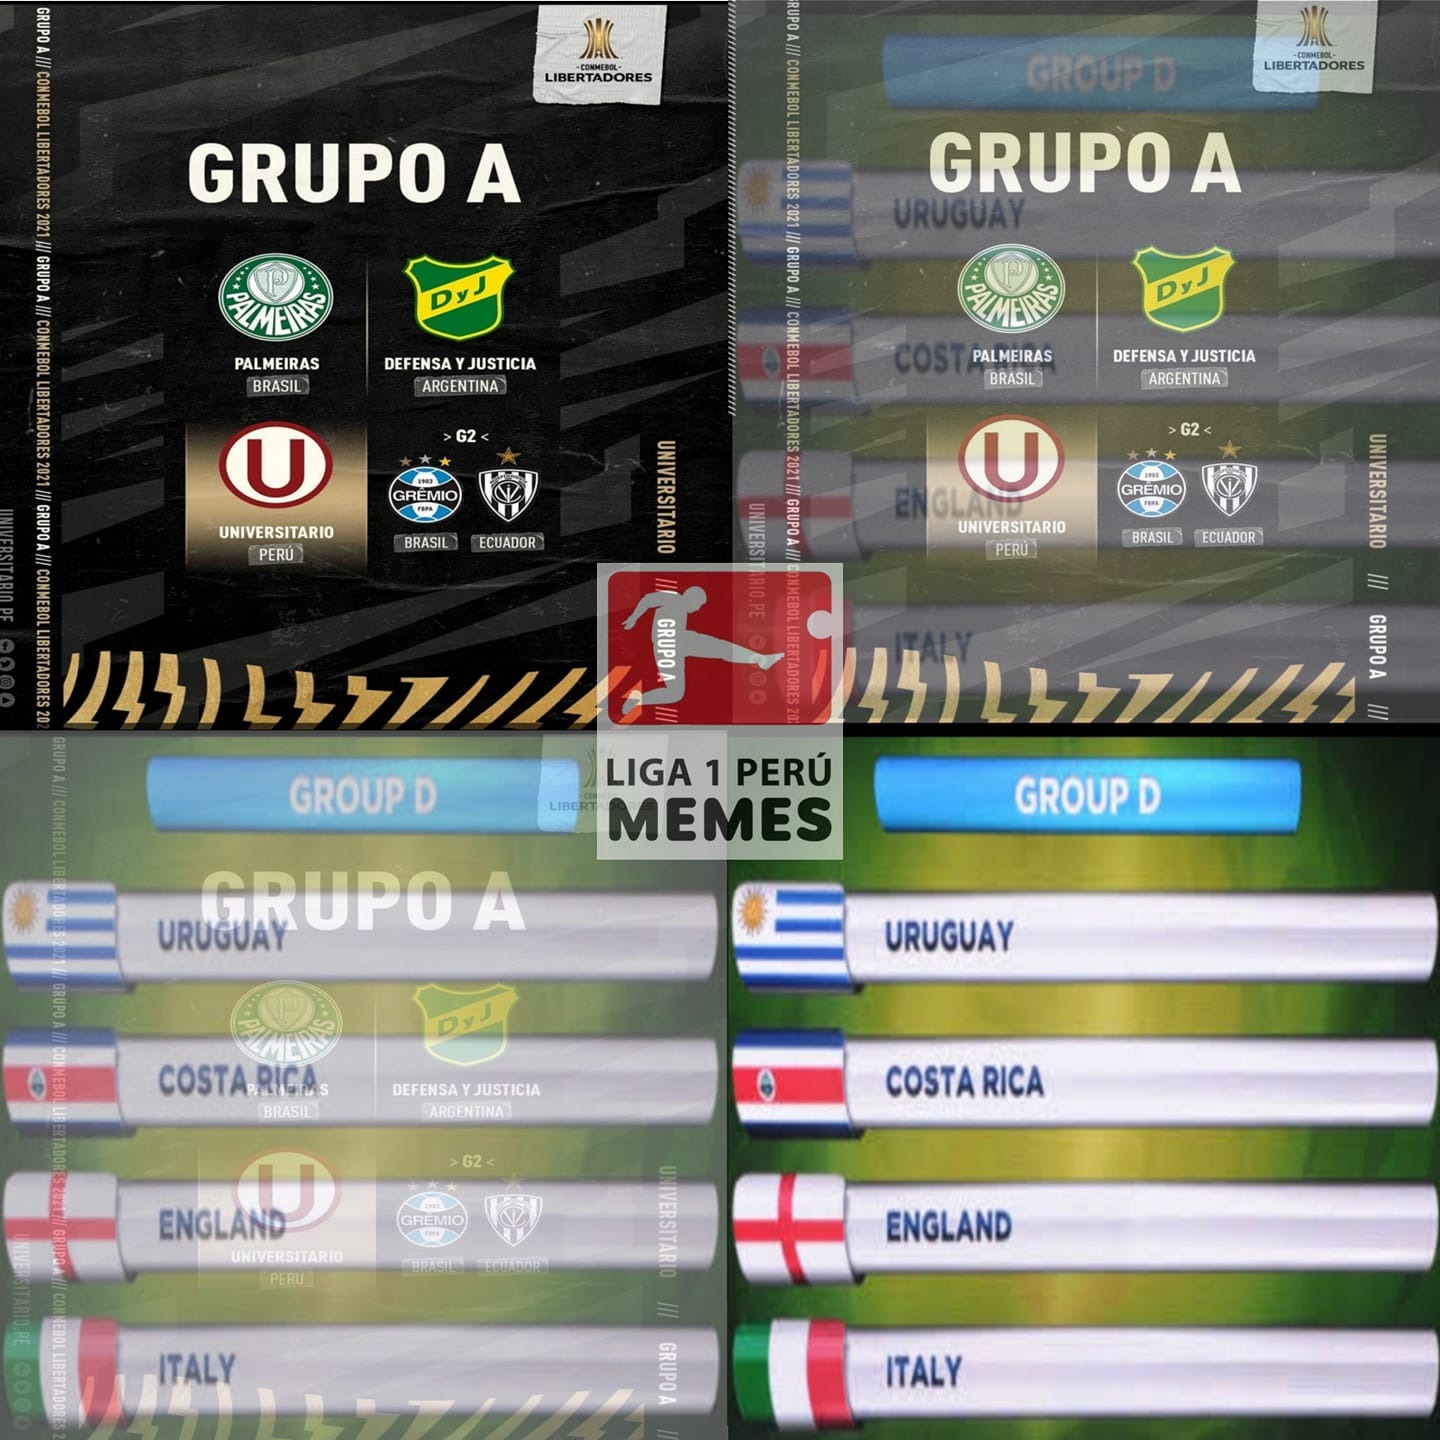 Universitario y Sporting Cristal protagonizan memes tras el sorteo de la Libertadores 2021.